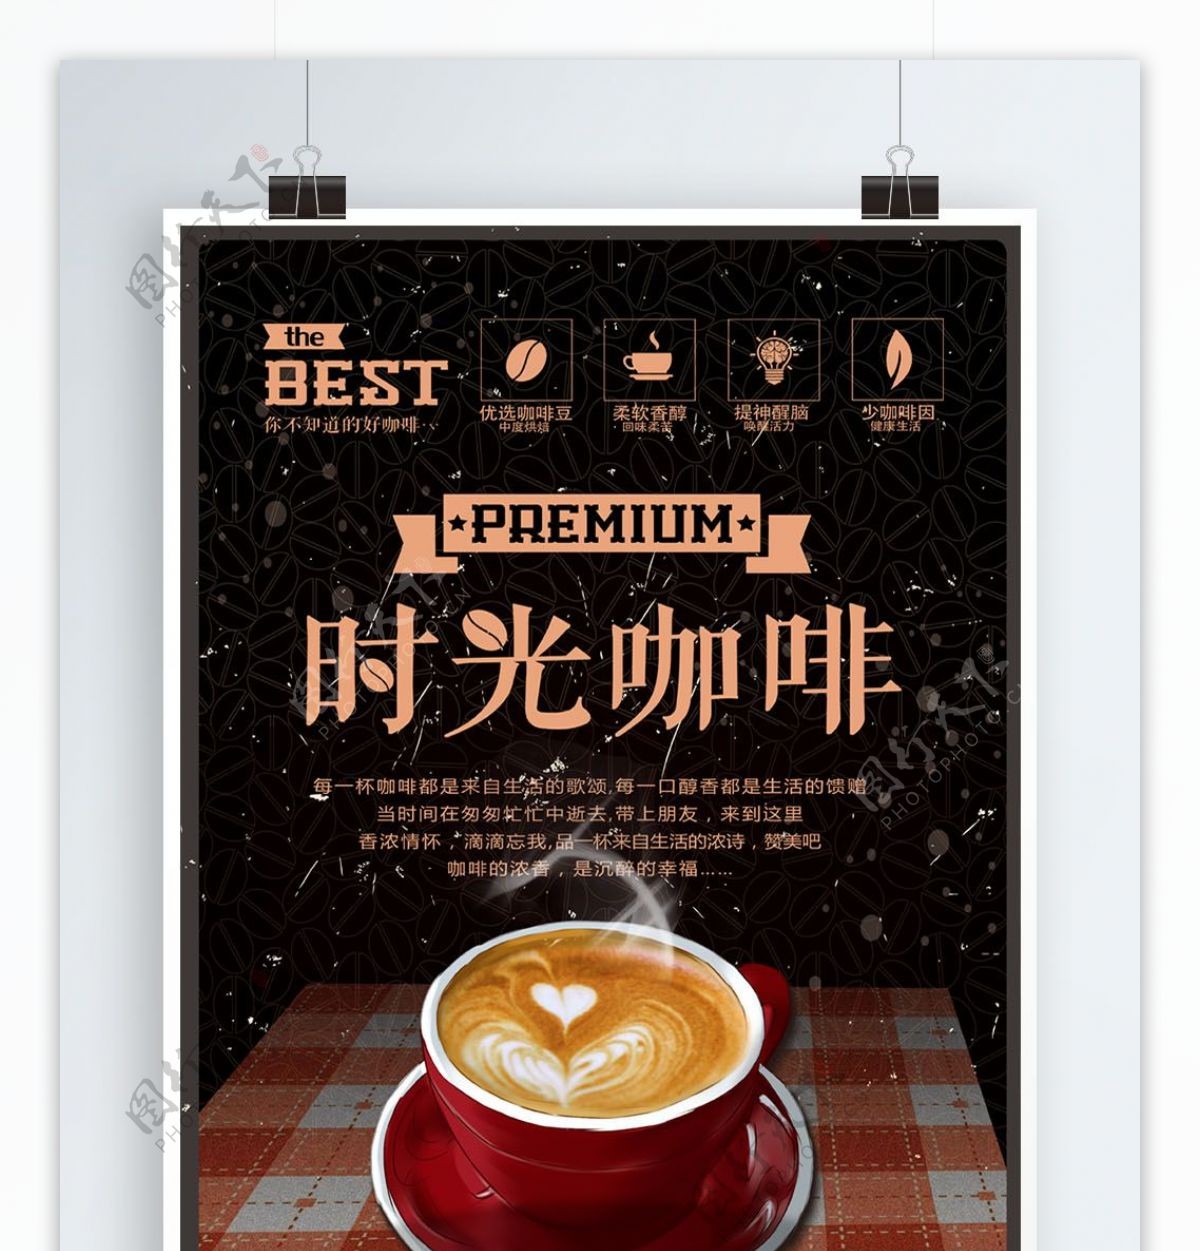 原创手绘咖啡宣传海报